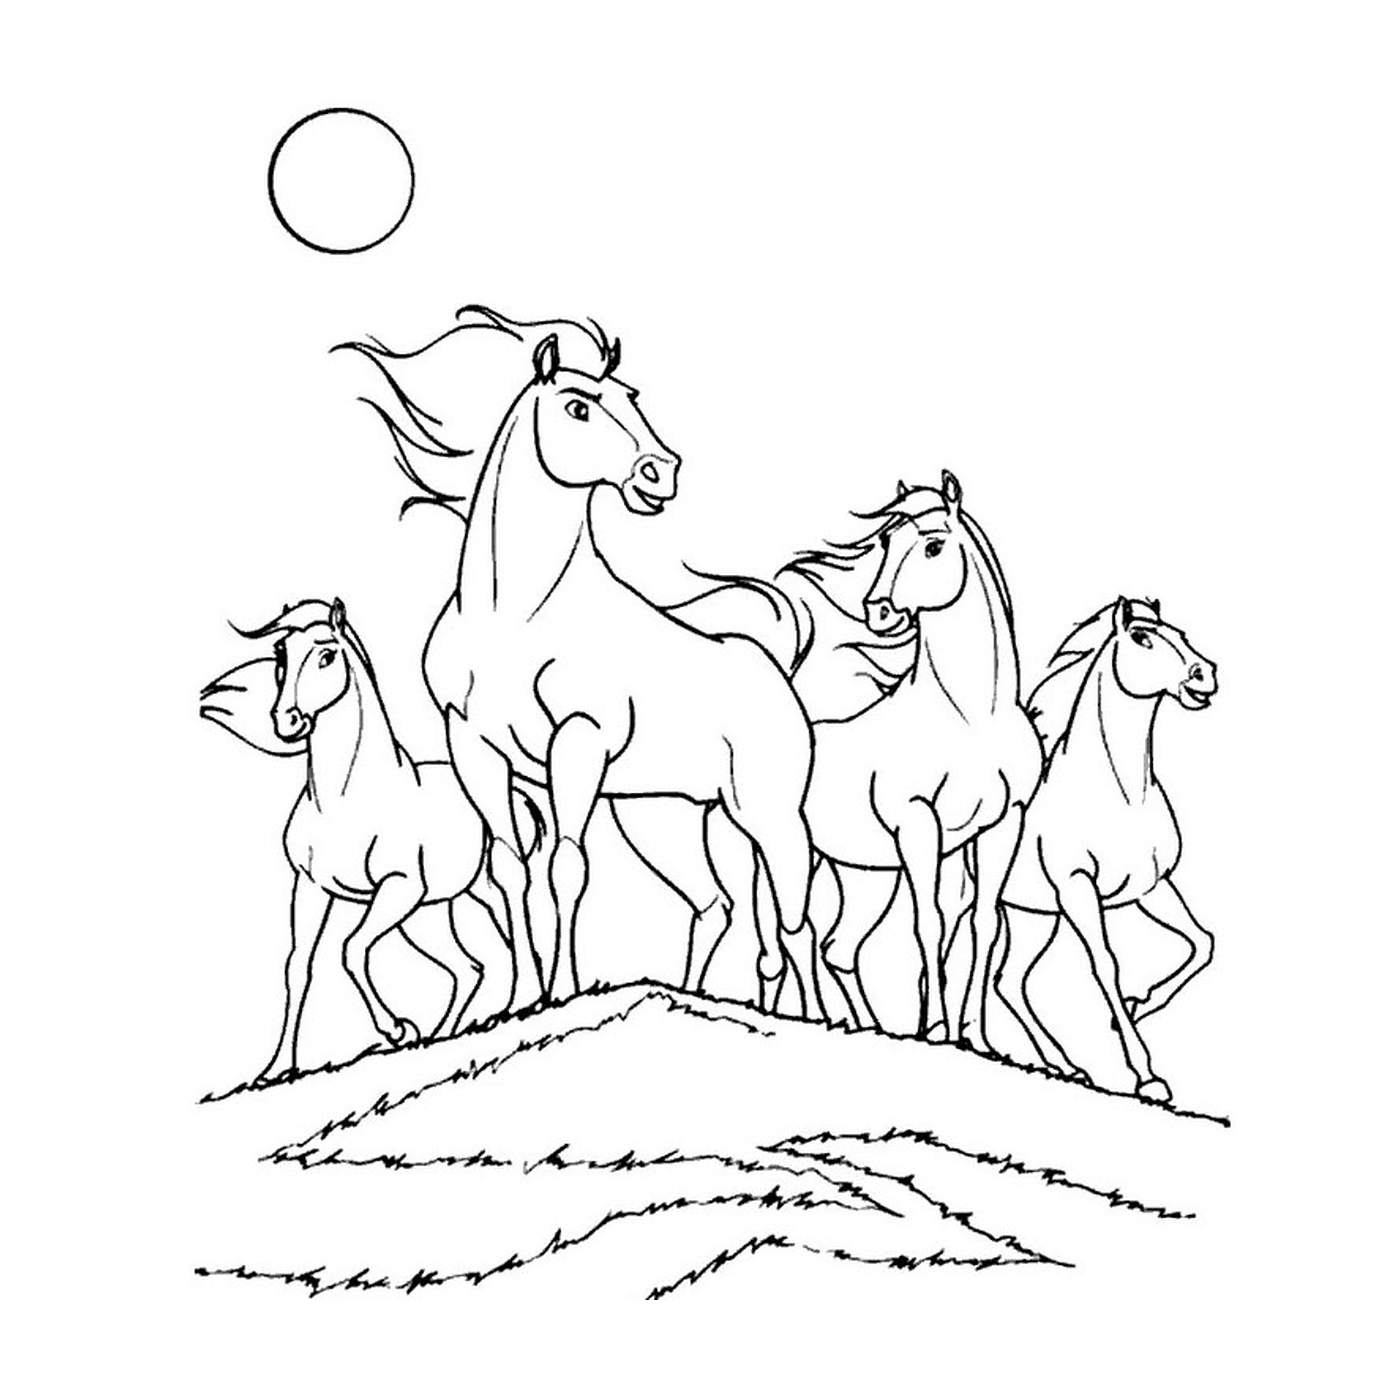  Gruppo di cavalli in piedi su una collina erbosa 